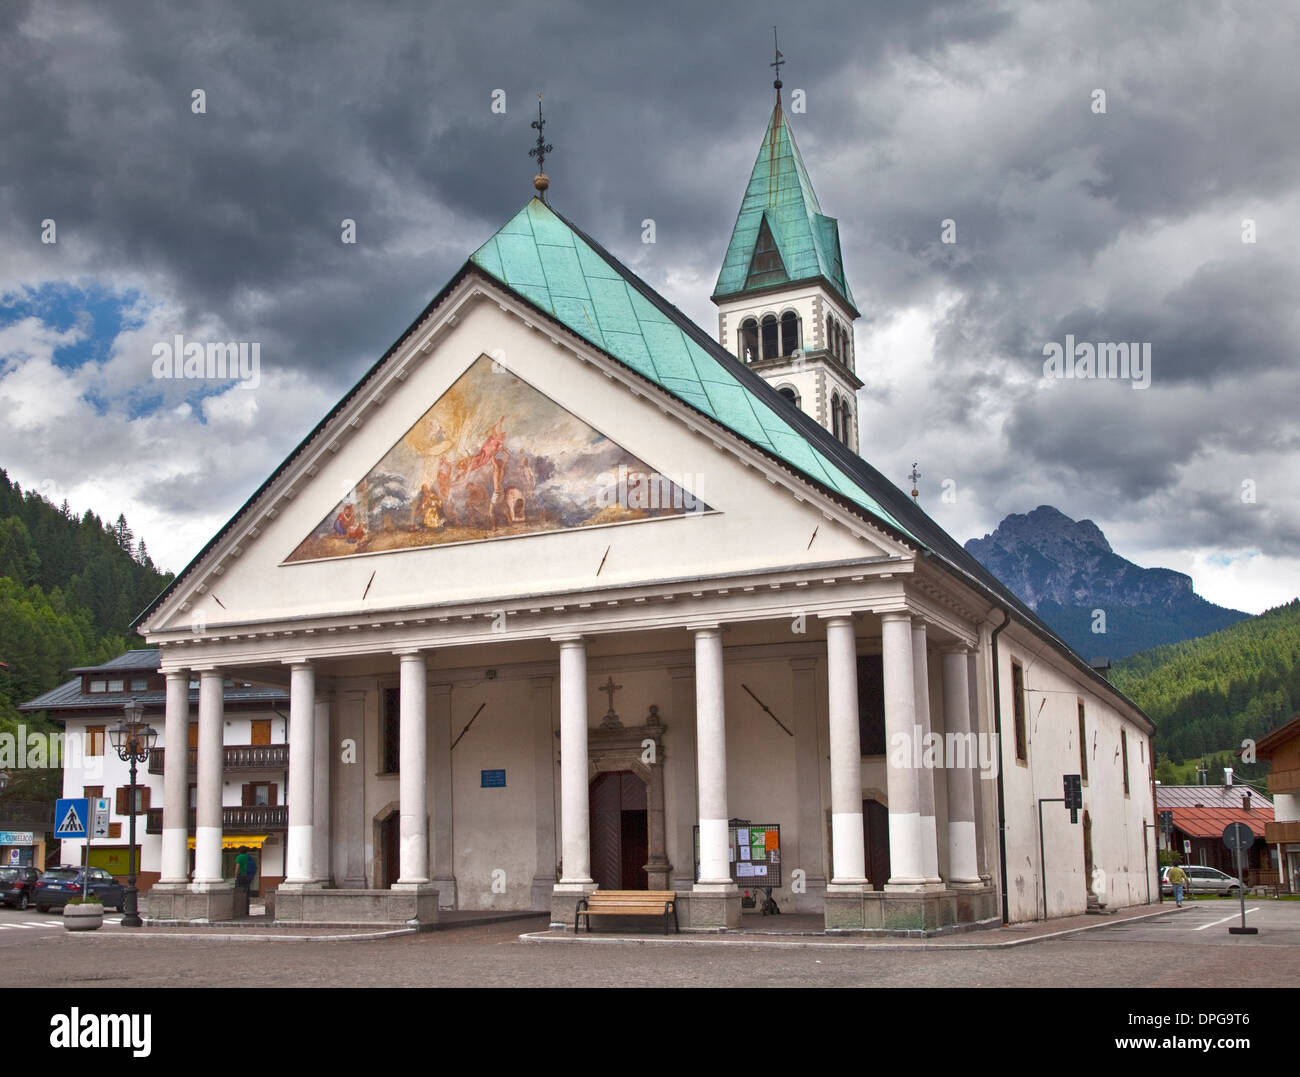 Comune di Santa Stefano, Dolomites, Italy Stock Photo